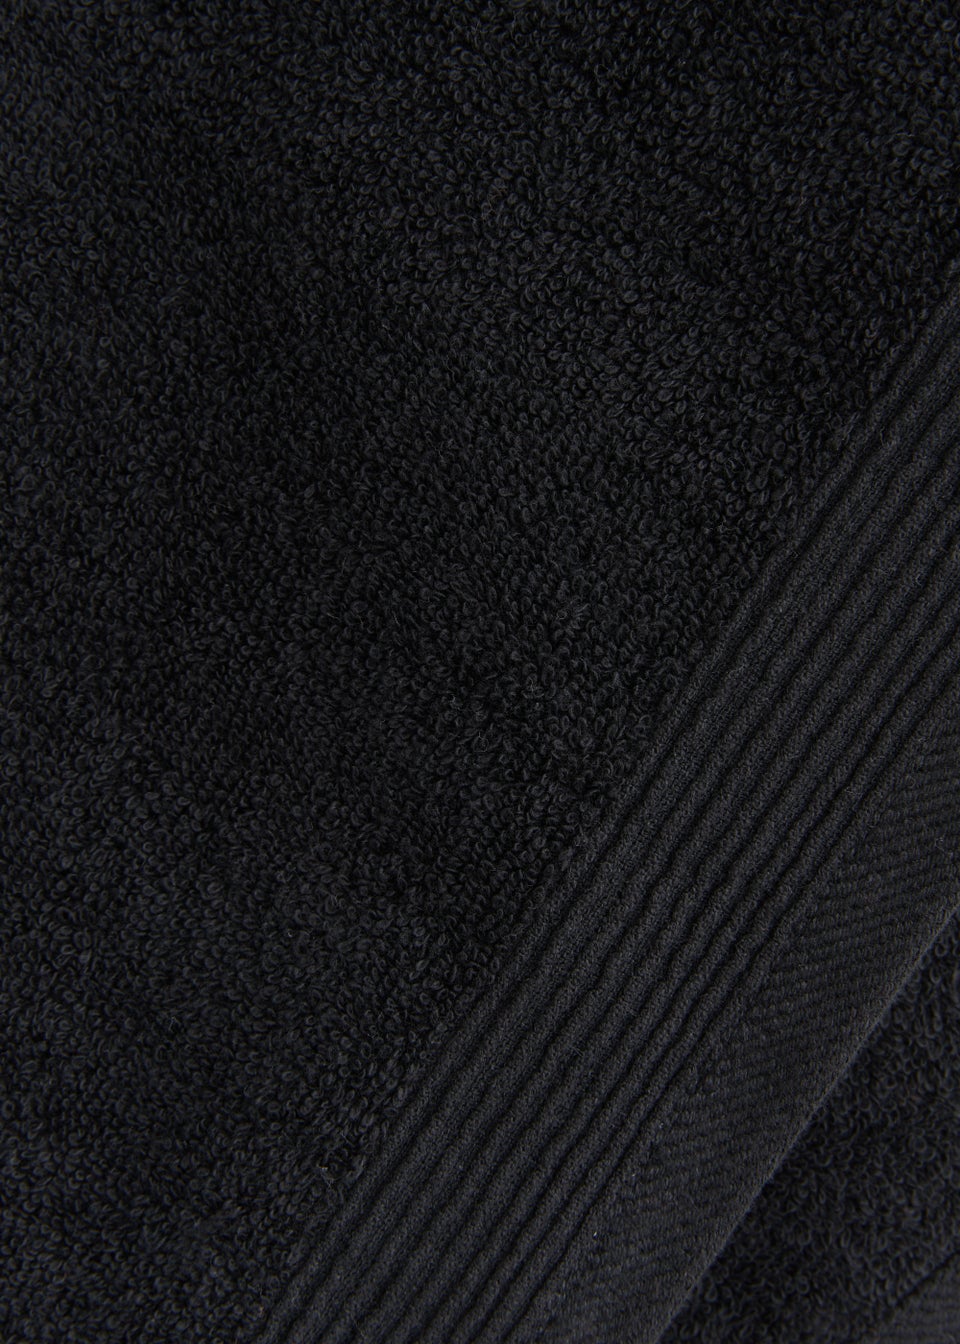 Black Low Twist 100% Cotton Towels